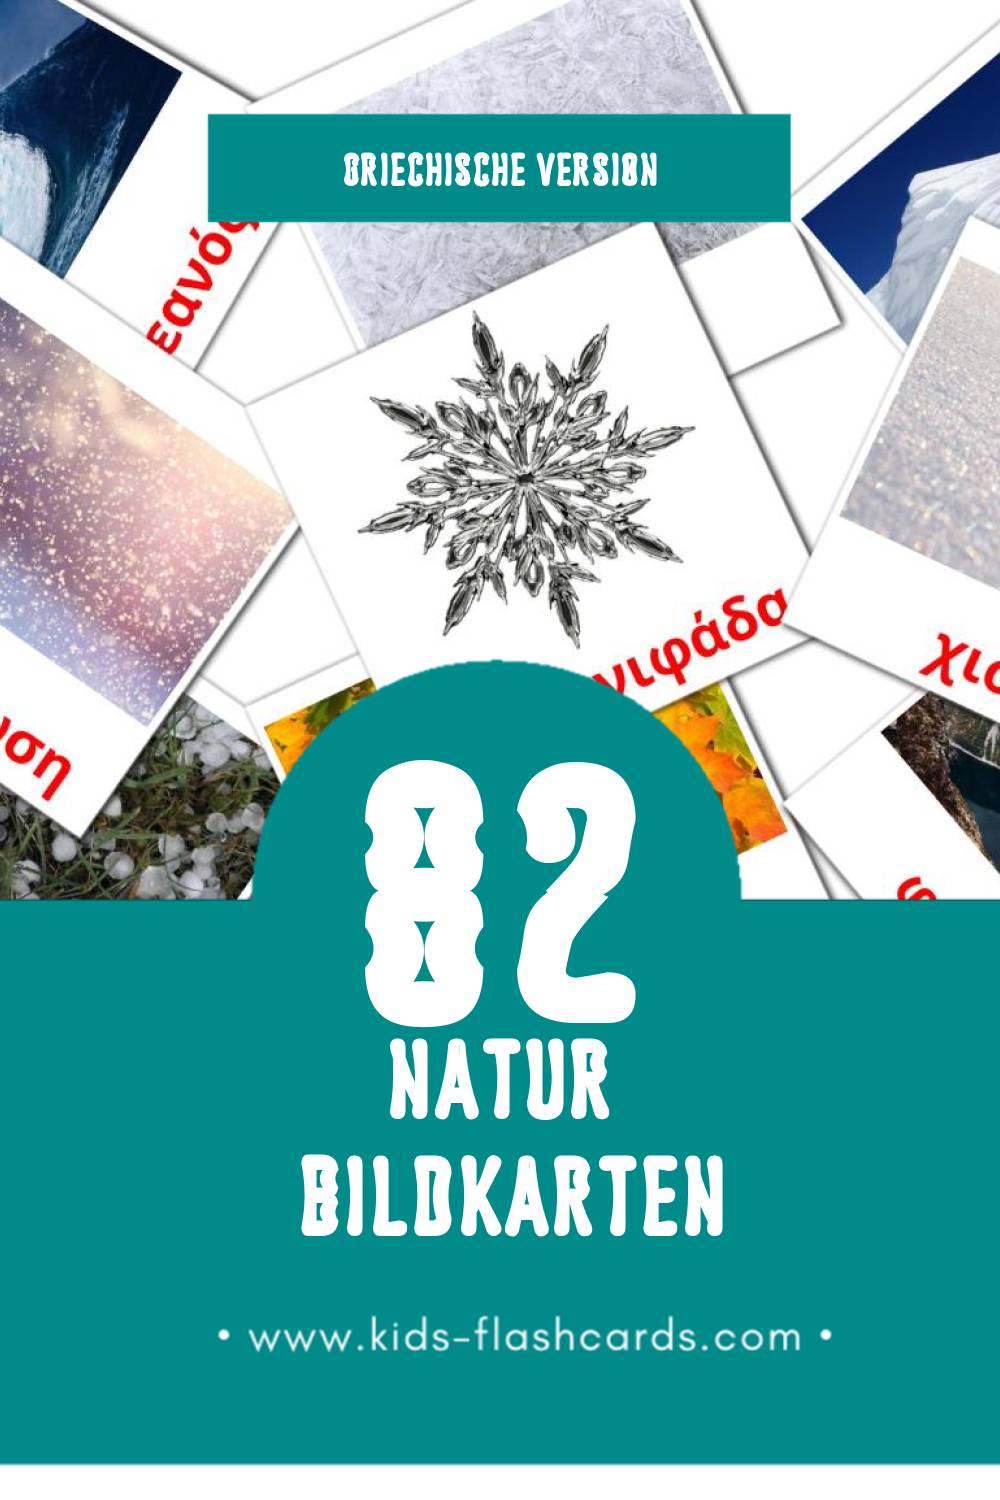 Visual Φύση Flashcards für Kleinkinder (52 Karten in Griechisch)